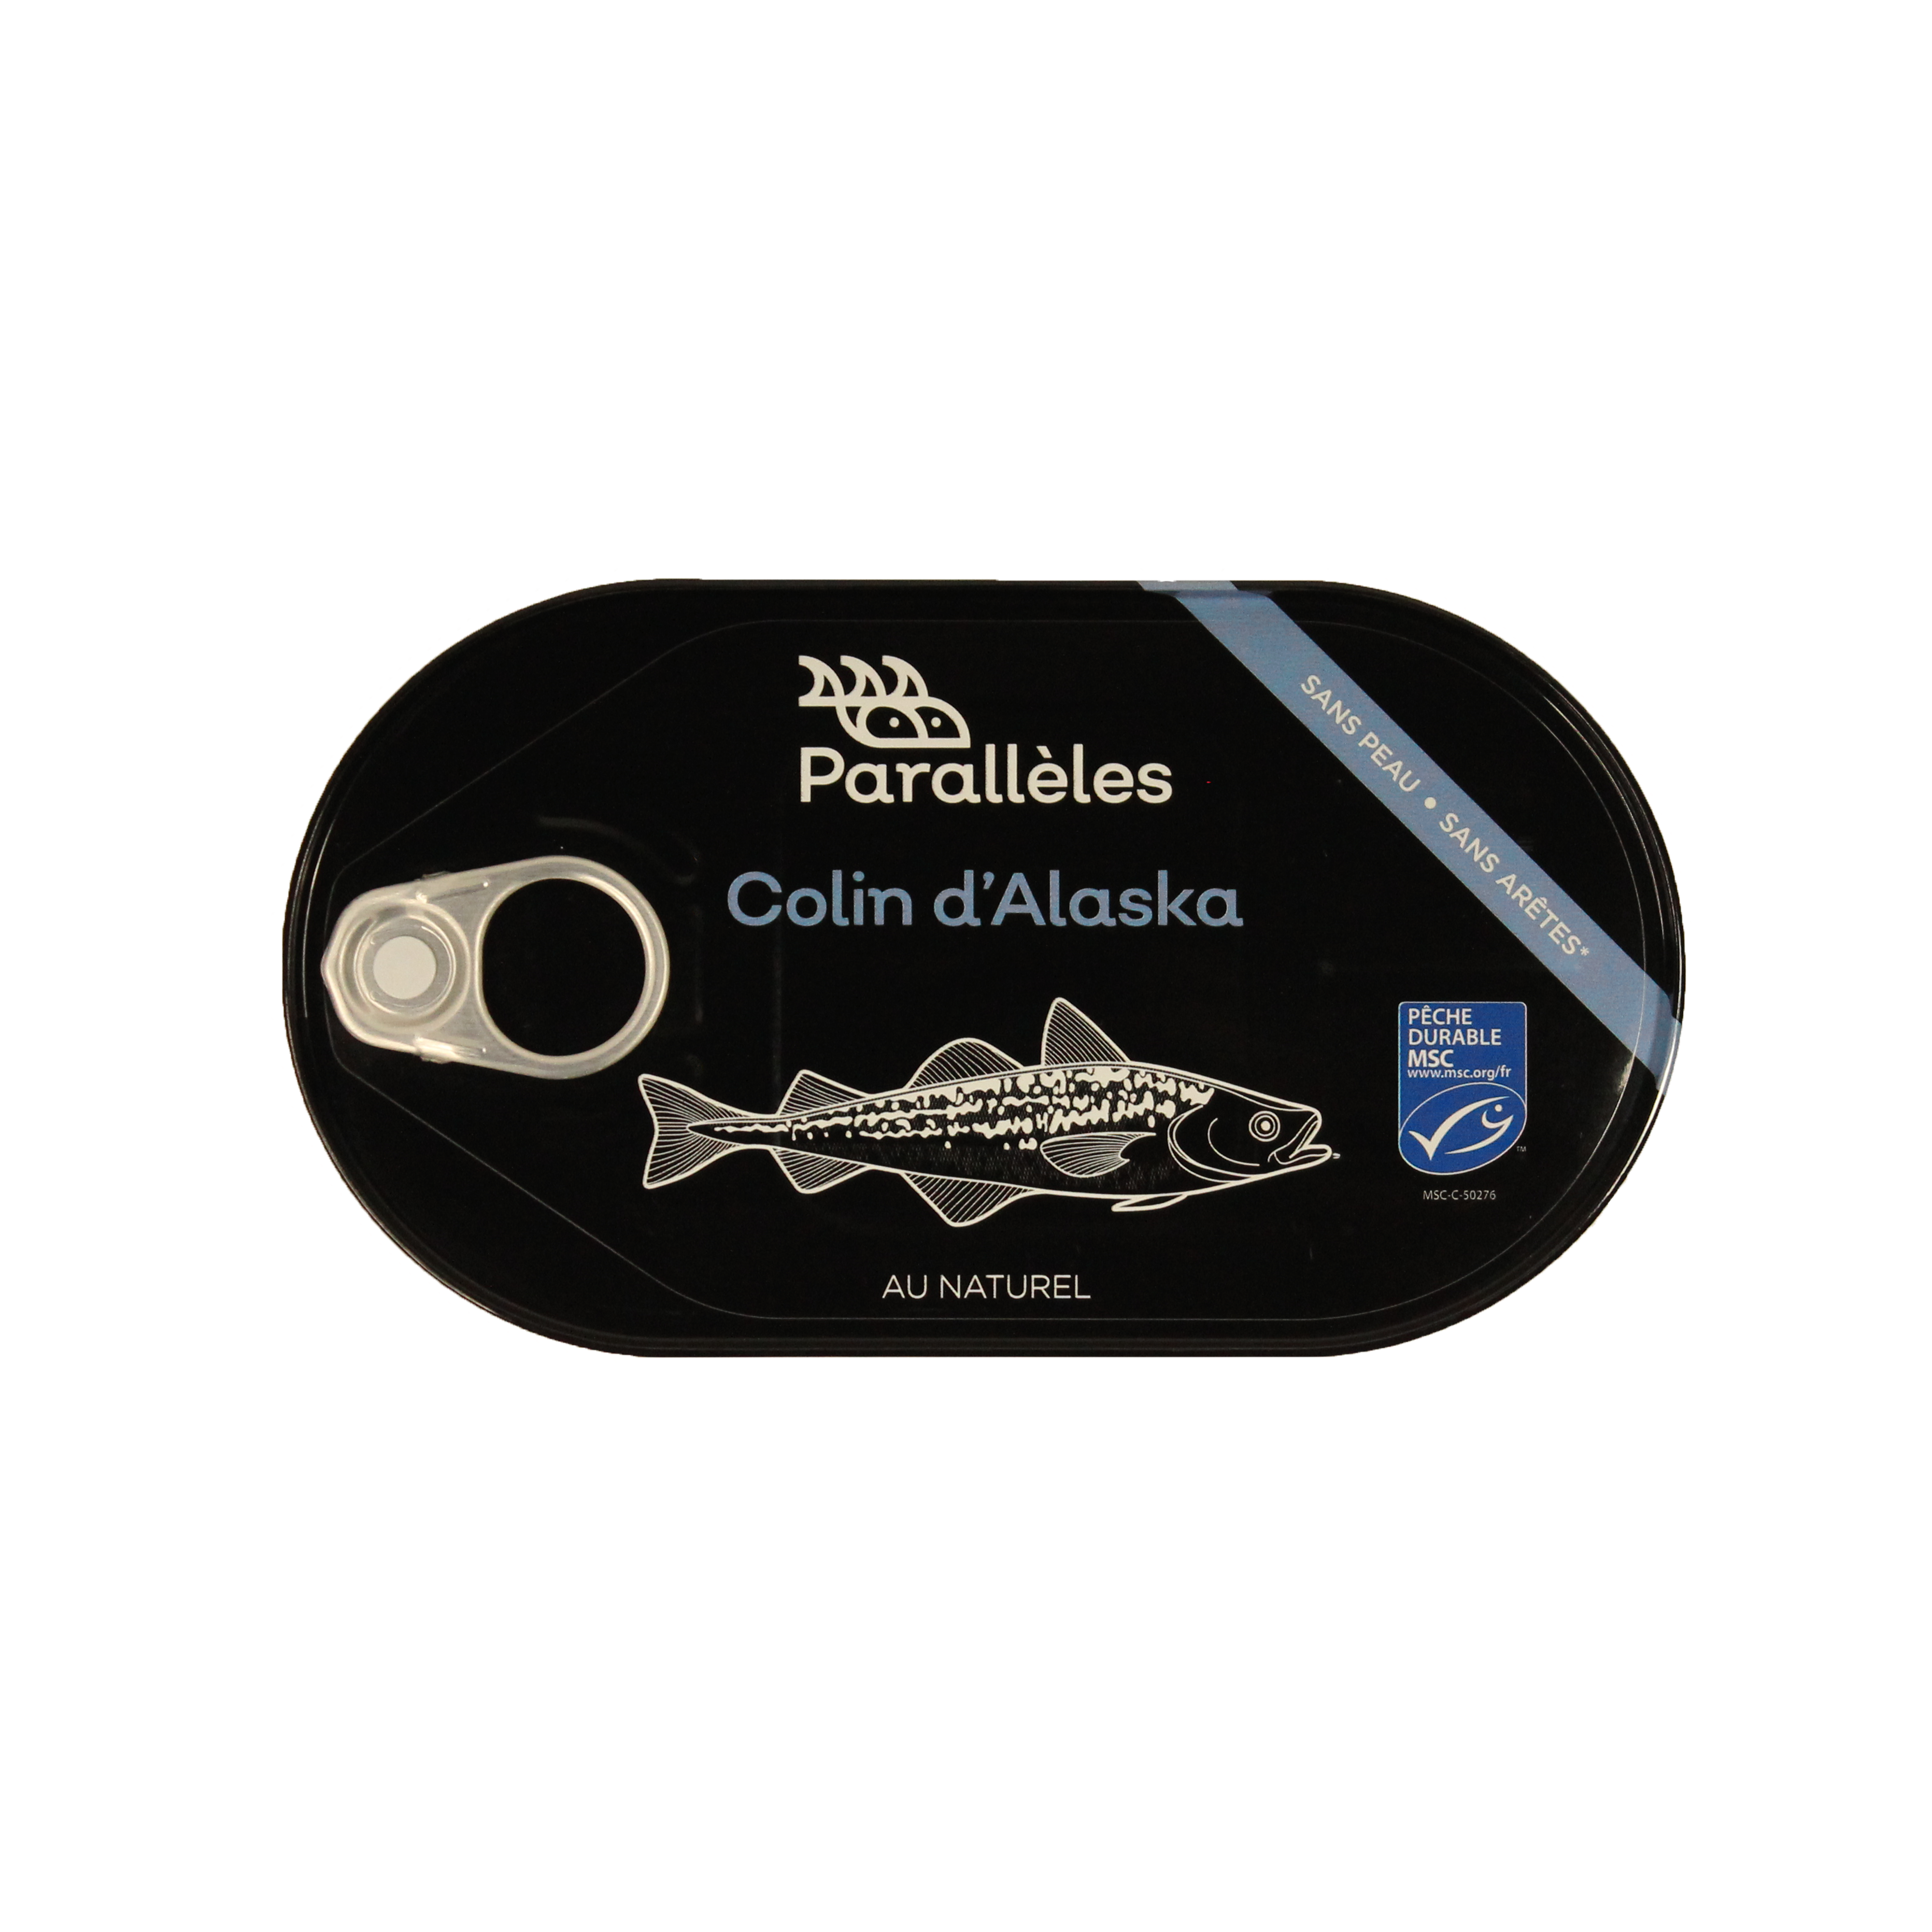 Colin d'Alaska au naturel - MSC-190g - Conserves Parallèles 